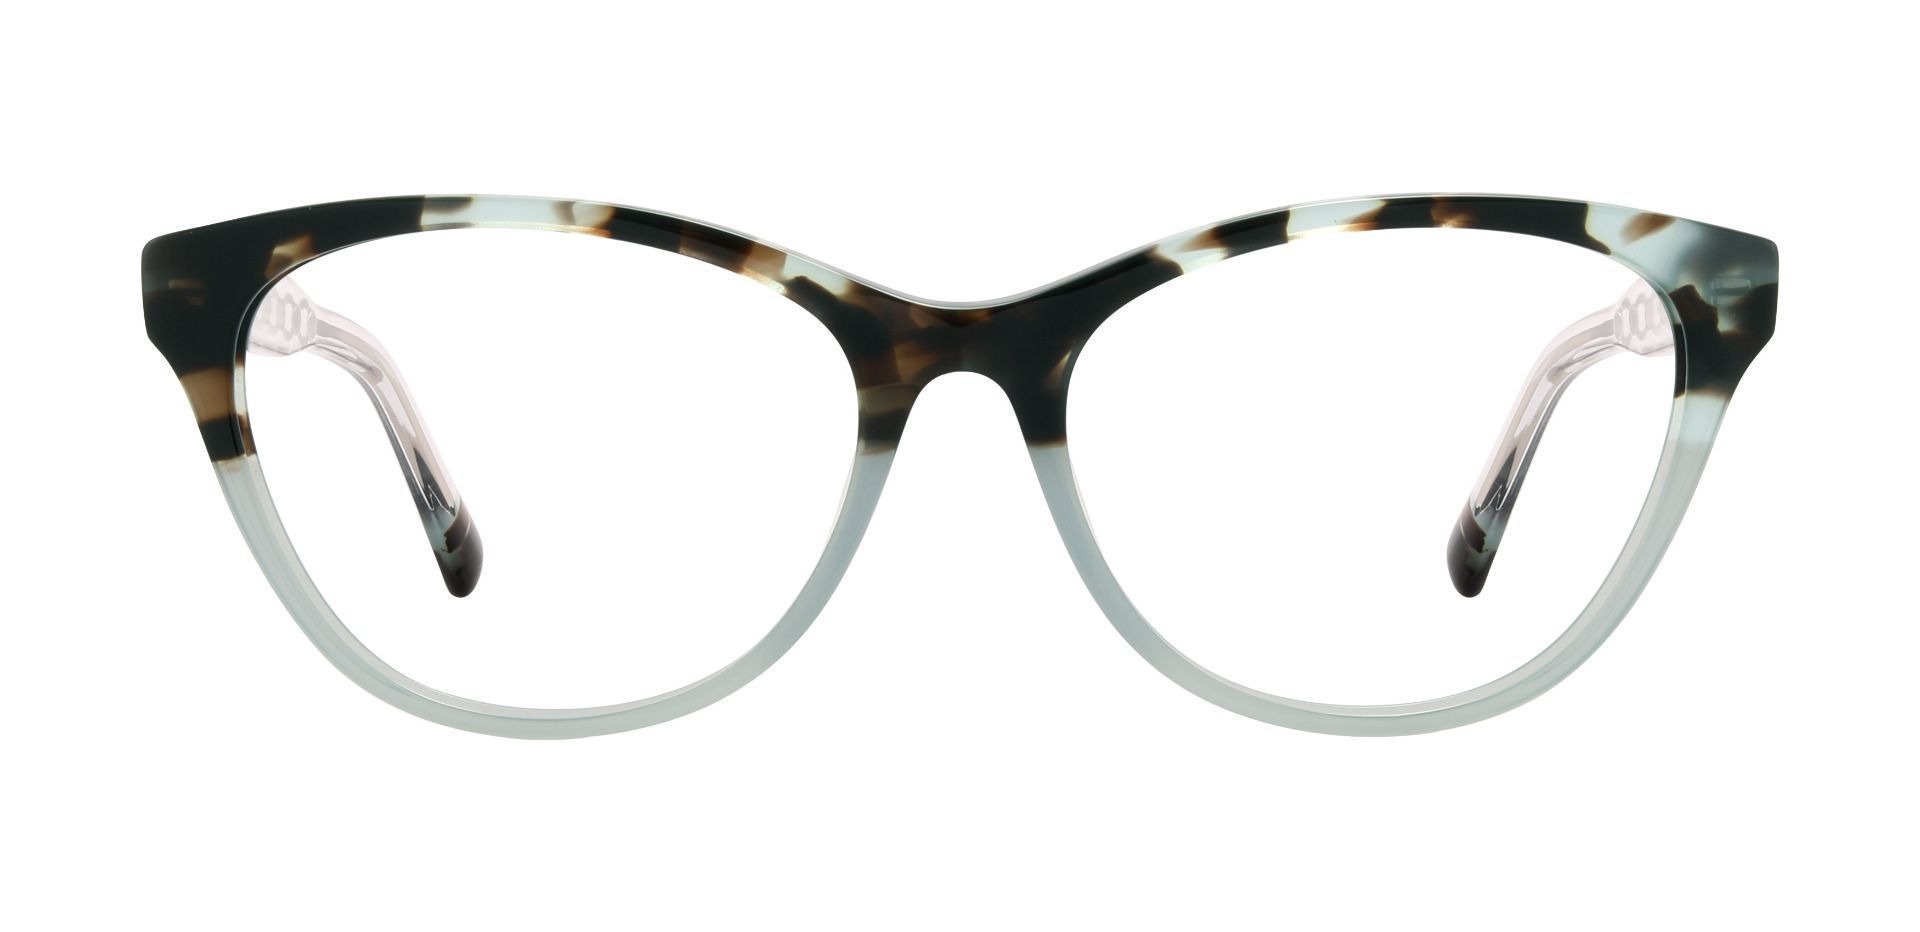 Knoxville Cat Eye Prescription Glasses Two Women's Eyeglasses